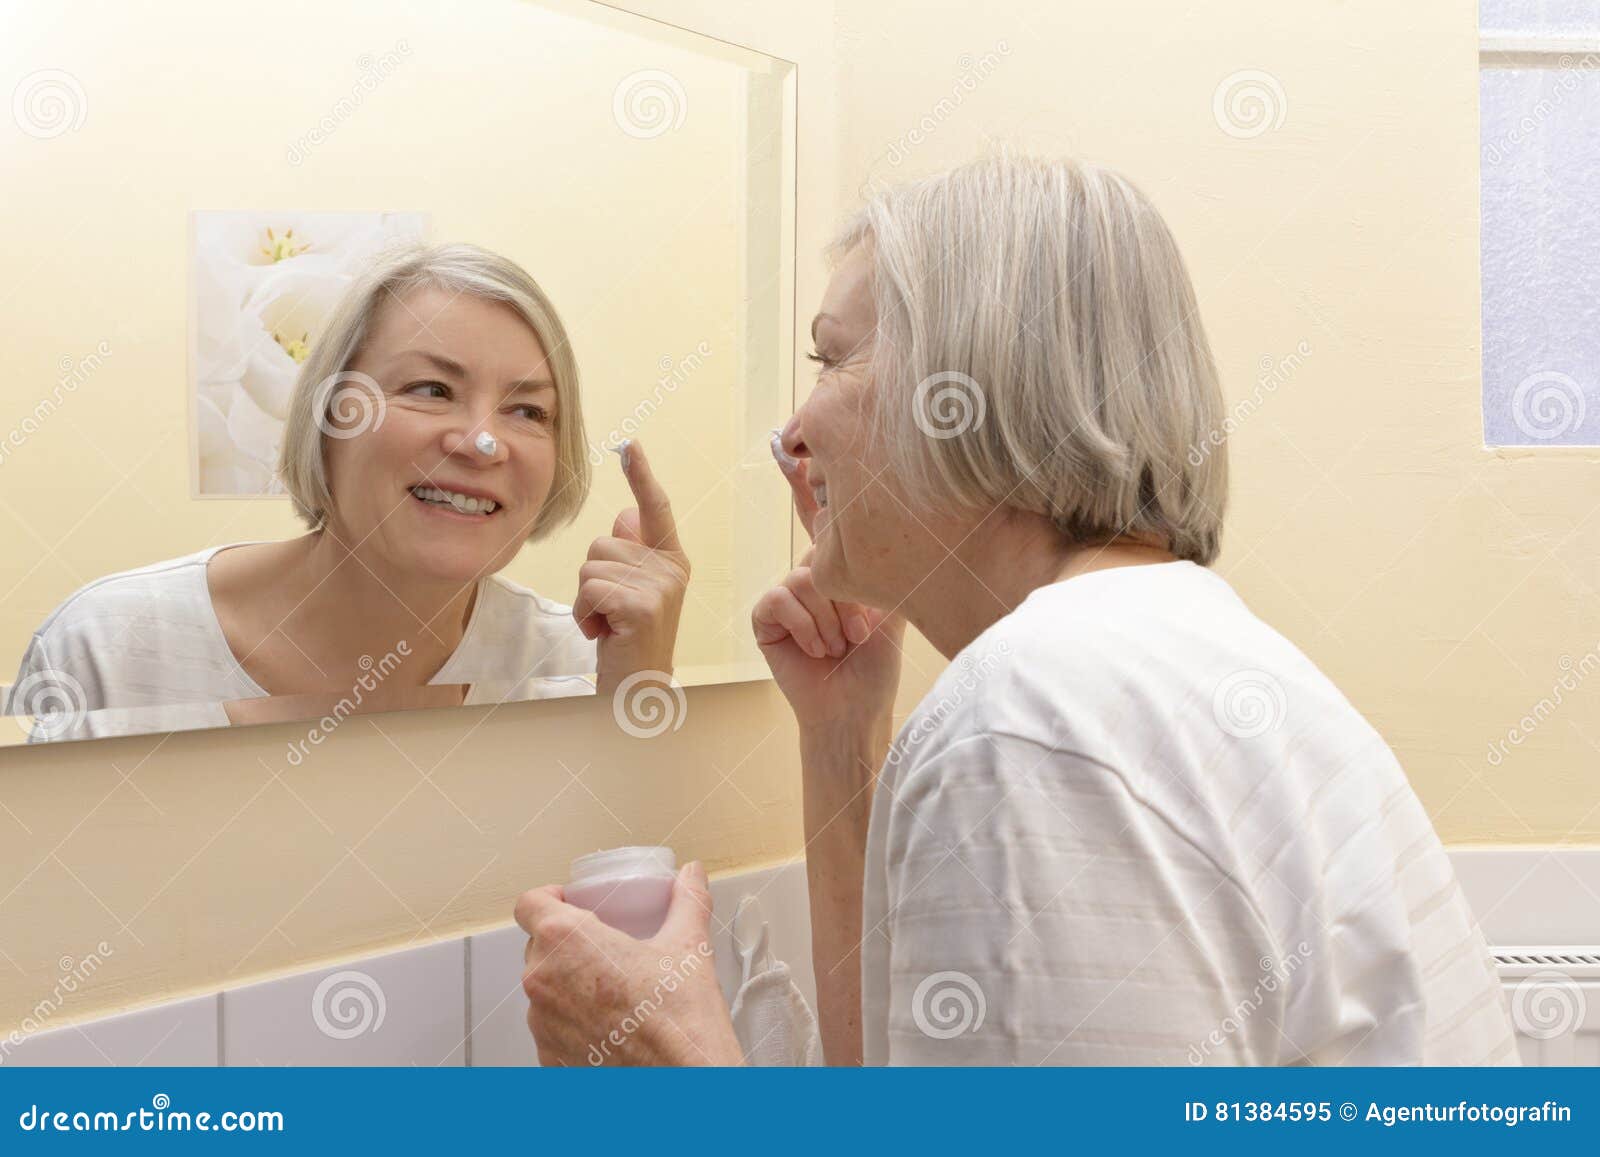 愉快的成熟妇女润肤霜镜子. 有一个奶油色瓶子的快乐的资深妇女在她的手上和在她的站立在应用润肤霜的她的黄色卫生间前面镜子的鼻子的一个白色斑点于她的面孔